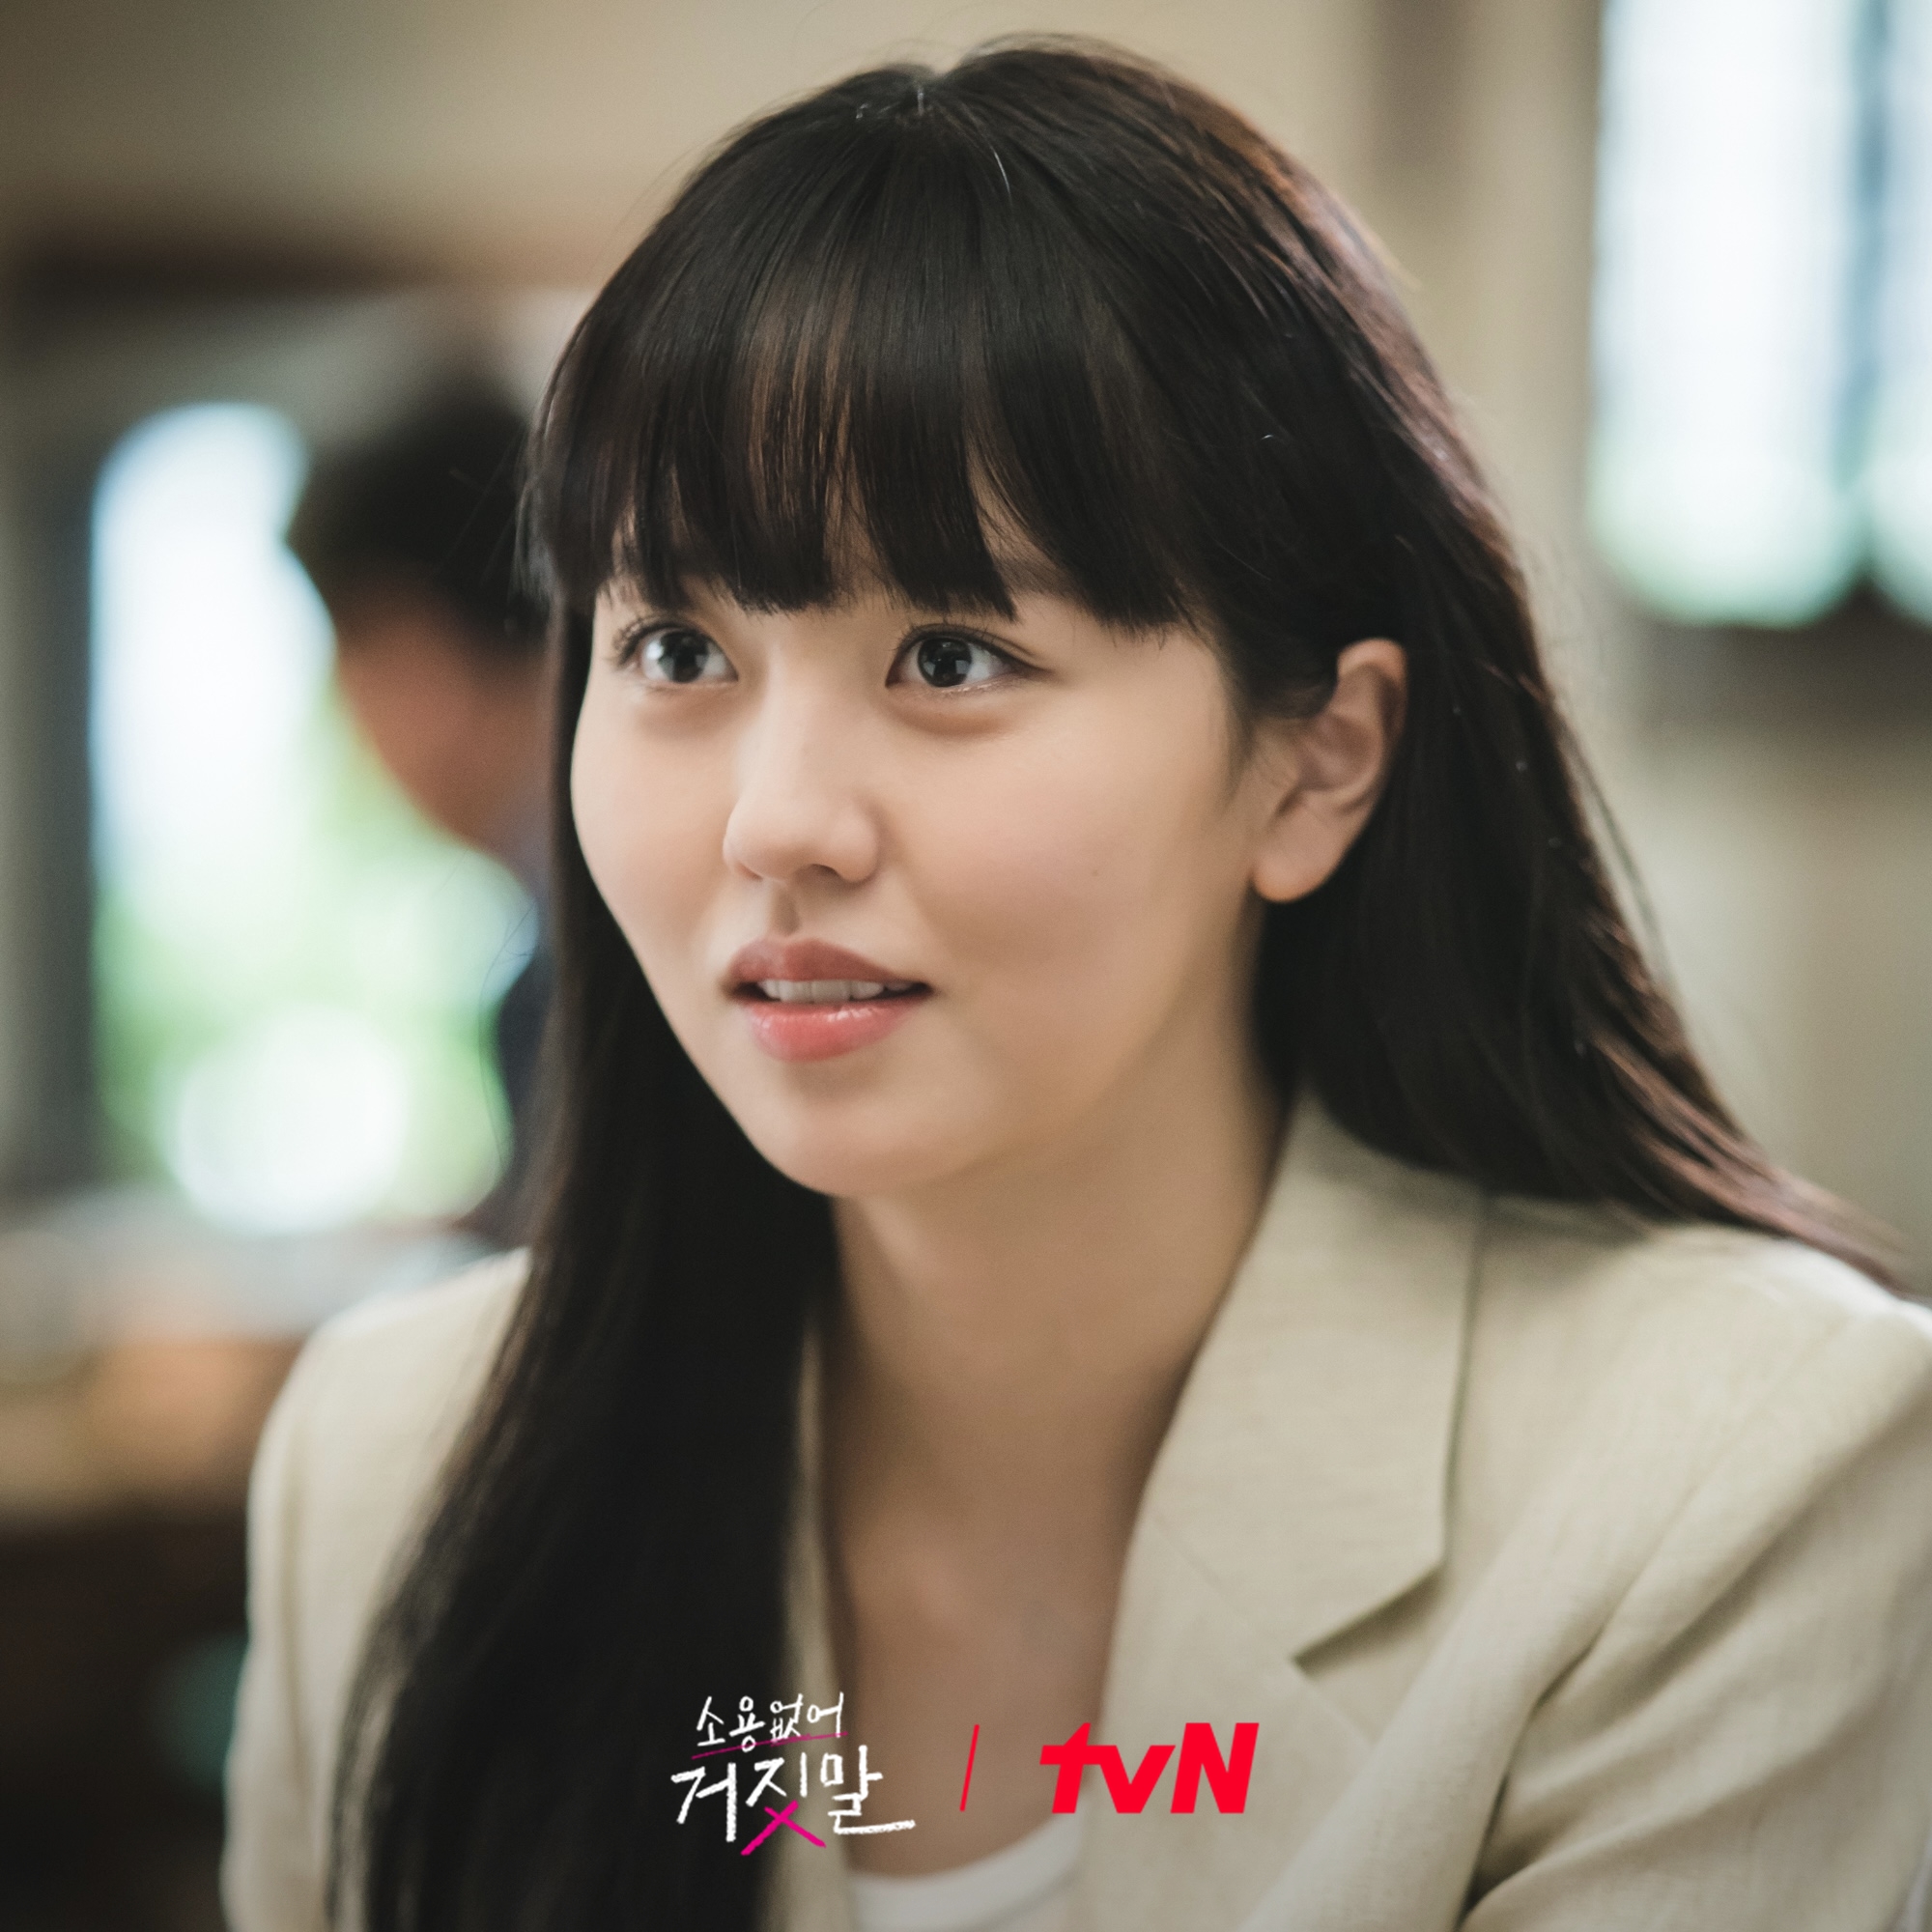 Vẻ đẹp ngọt ngào của ‘em gái quốc dân’ Kim So Hyun trong ‘Thợ săn nói dối’ - Ảnh 3.